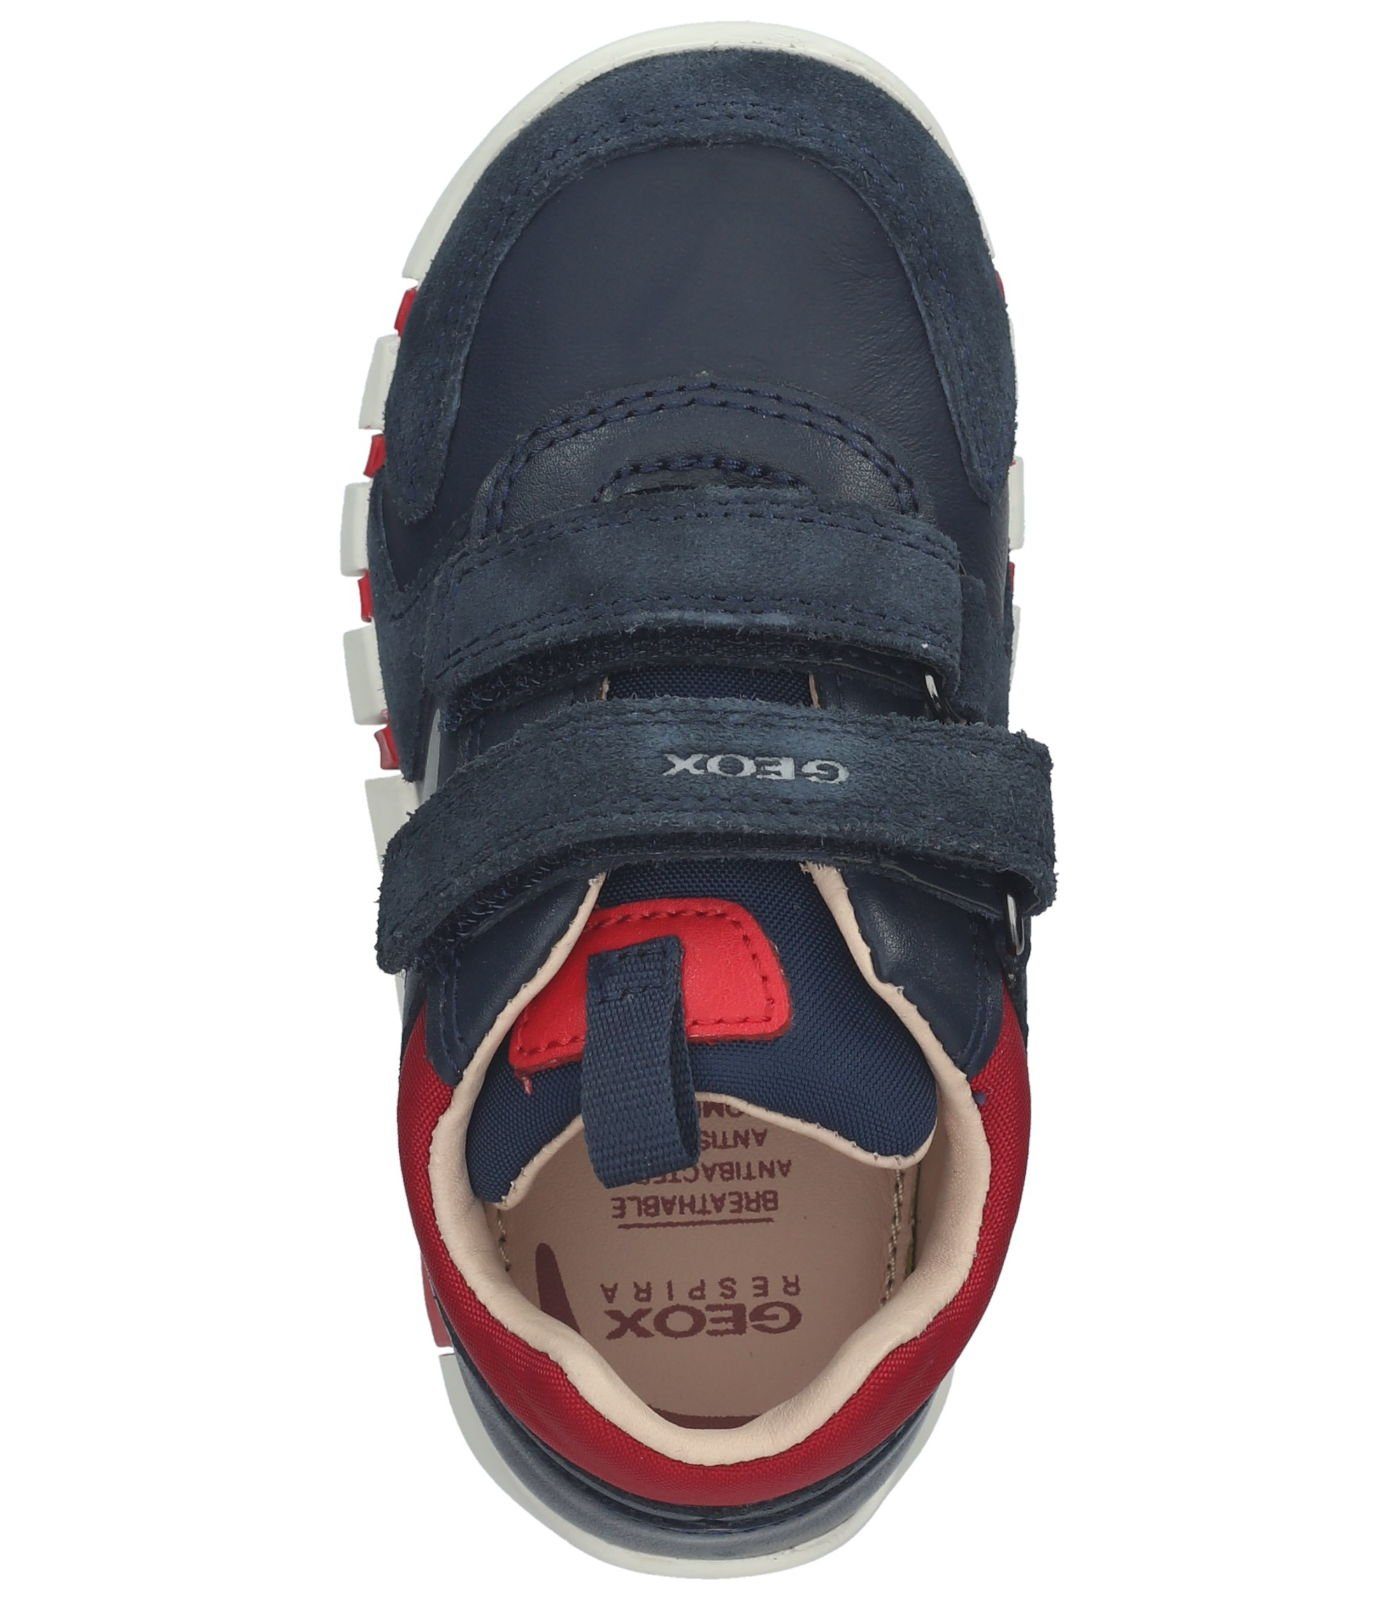 Leder/Textil Geox Rot Navy Sneaker Sneaker